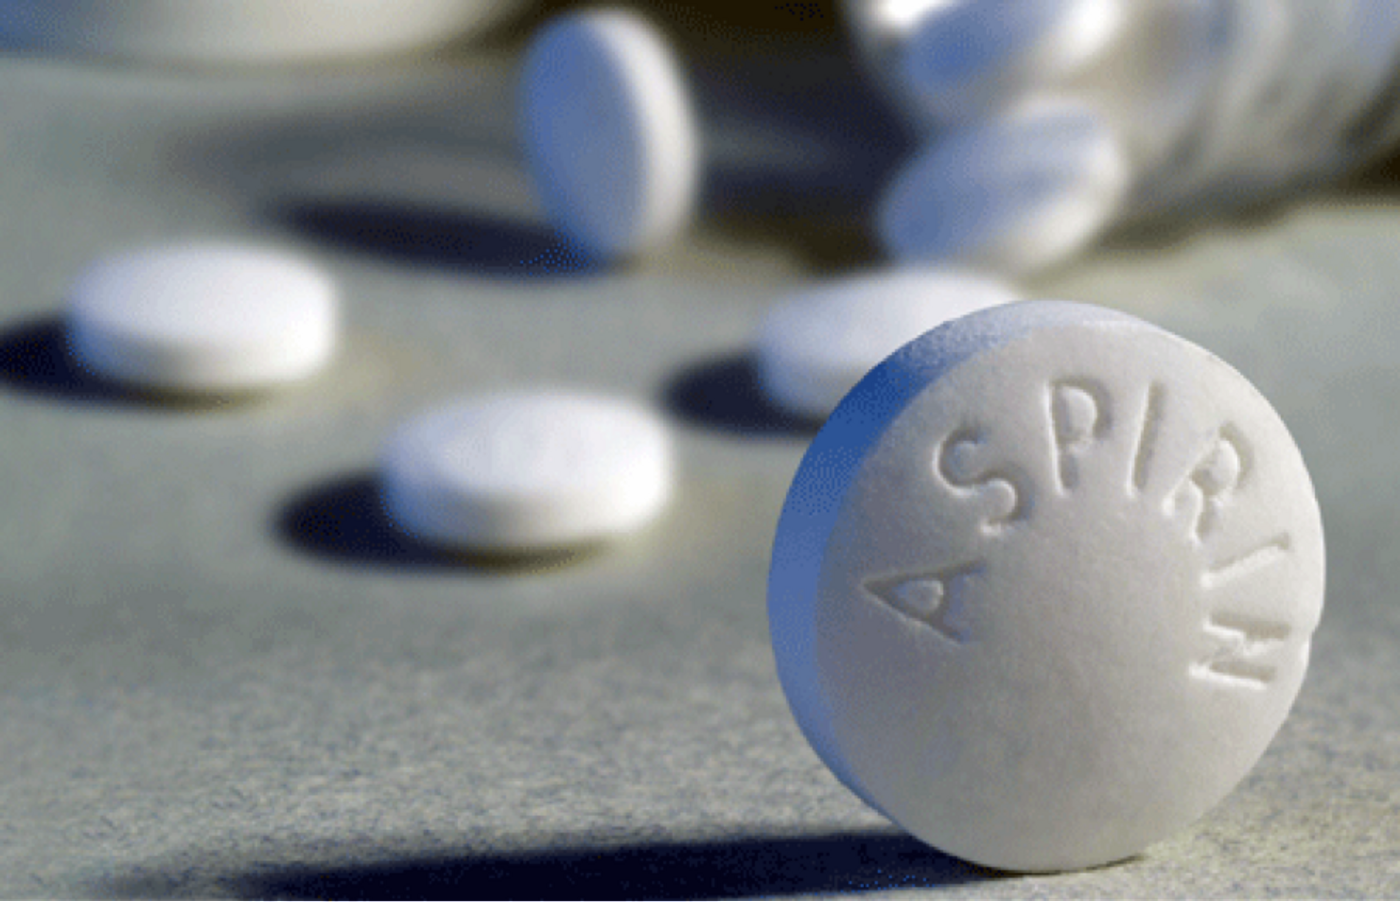 Low-dose aspirin as an anti-cancer treatment?